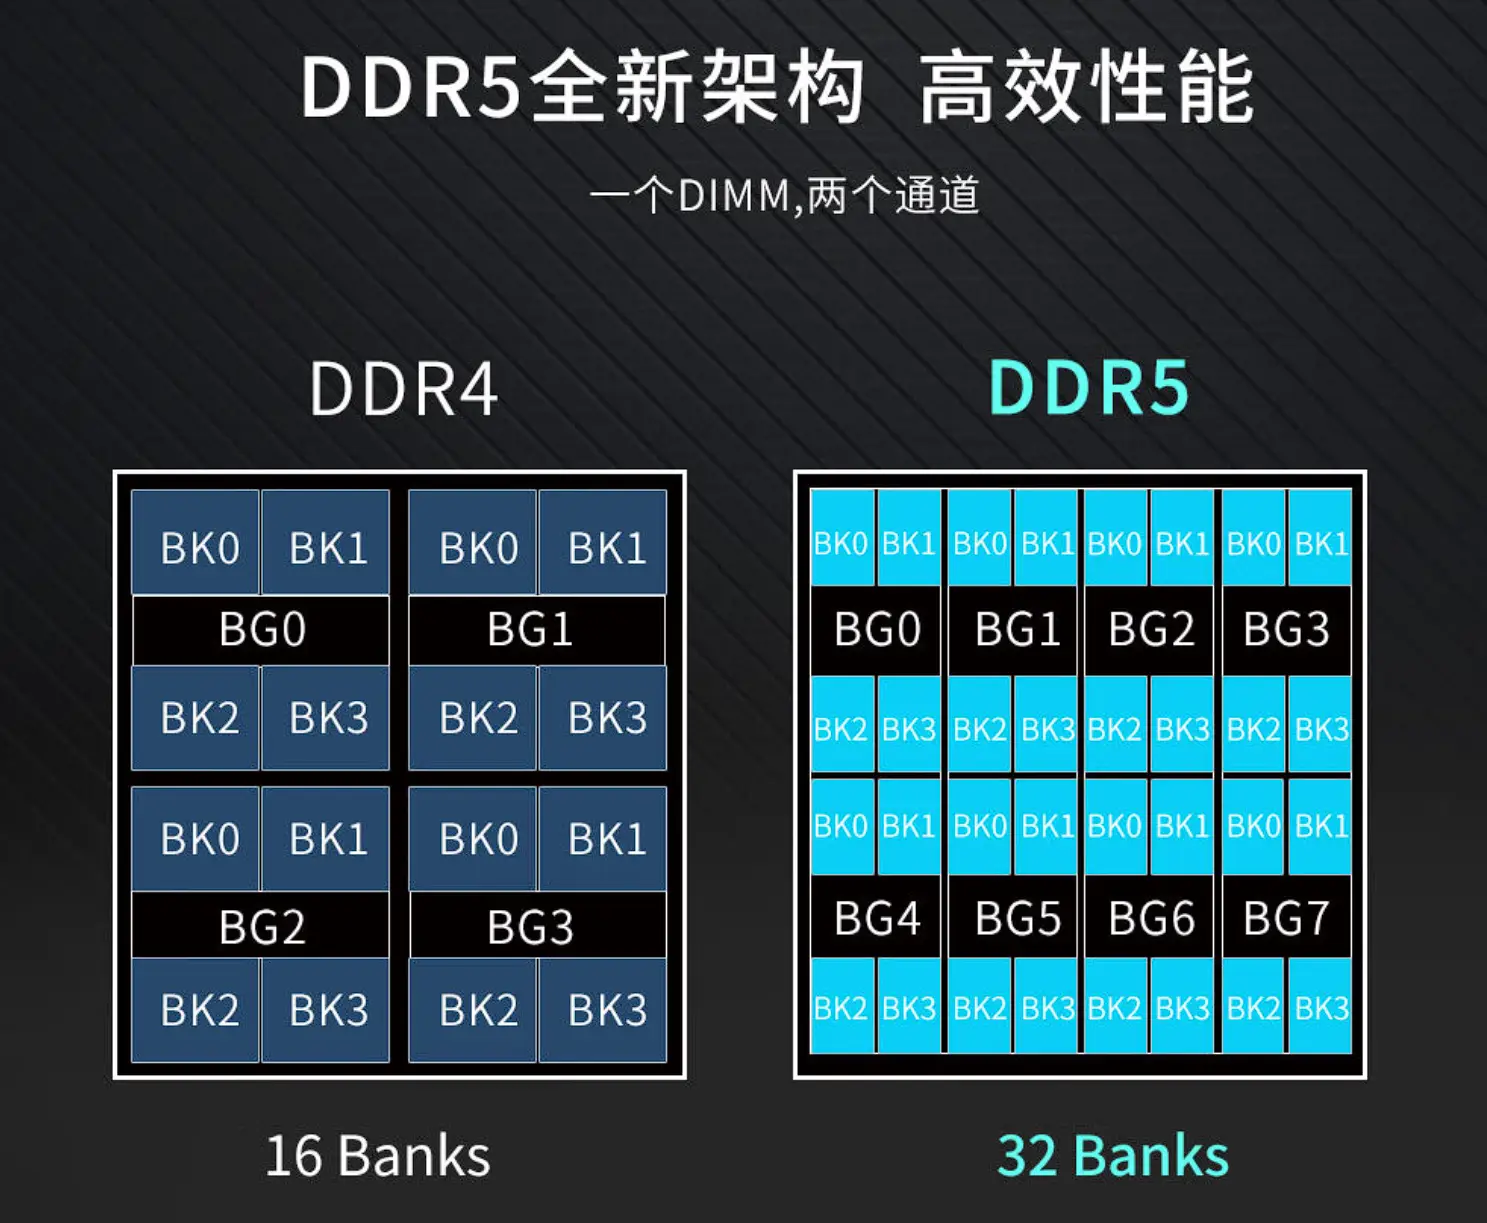 DDR5 真的比 DDR4 快吗？解析 的速度、价格与兼容性  第2张